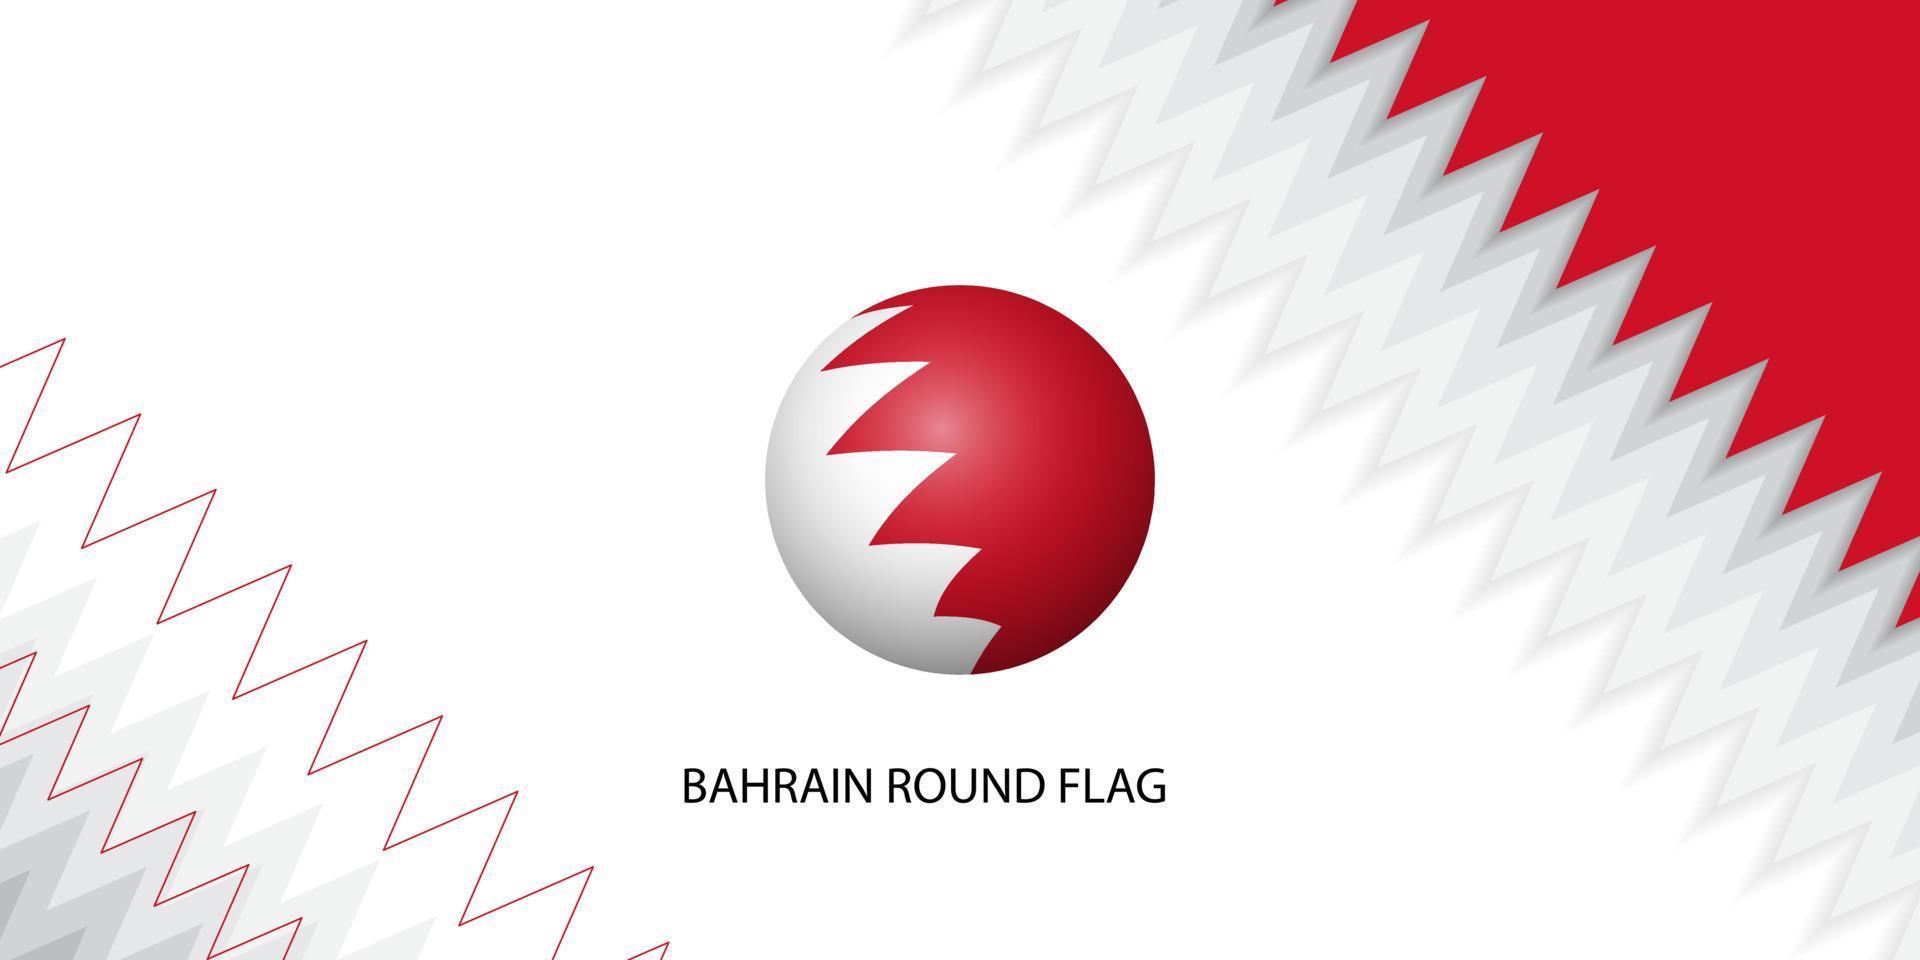 illustrazione di vettore della bandiera rotonda del bahrain. disegno del modello di sfondo del giorno dell'indipendenza del bahrain.